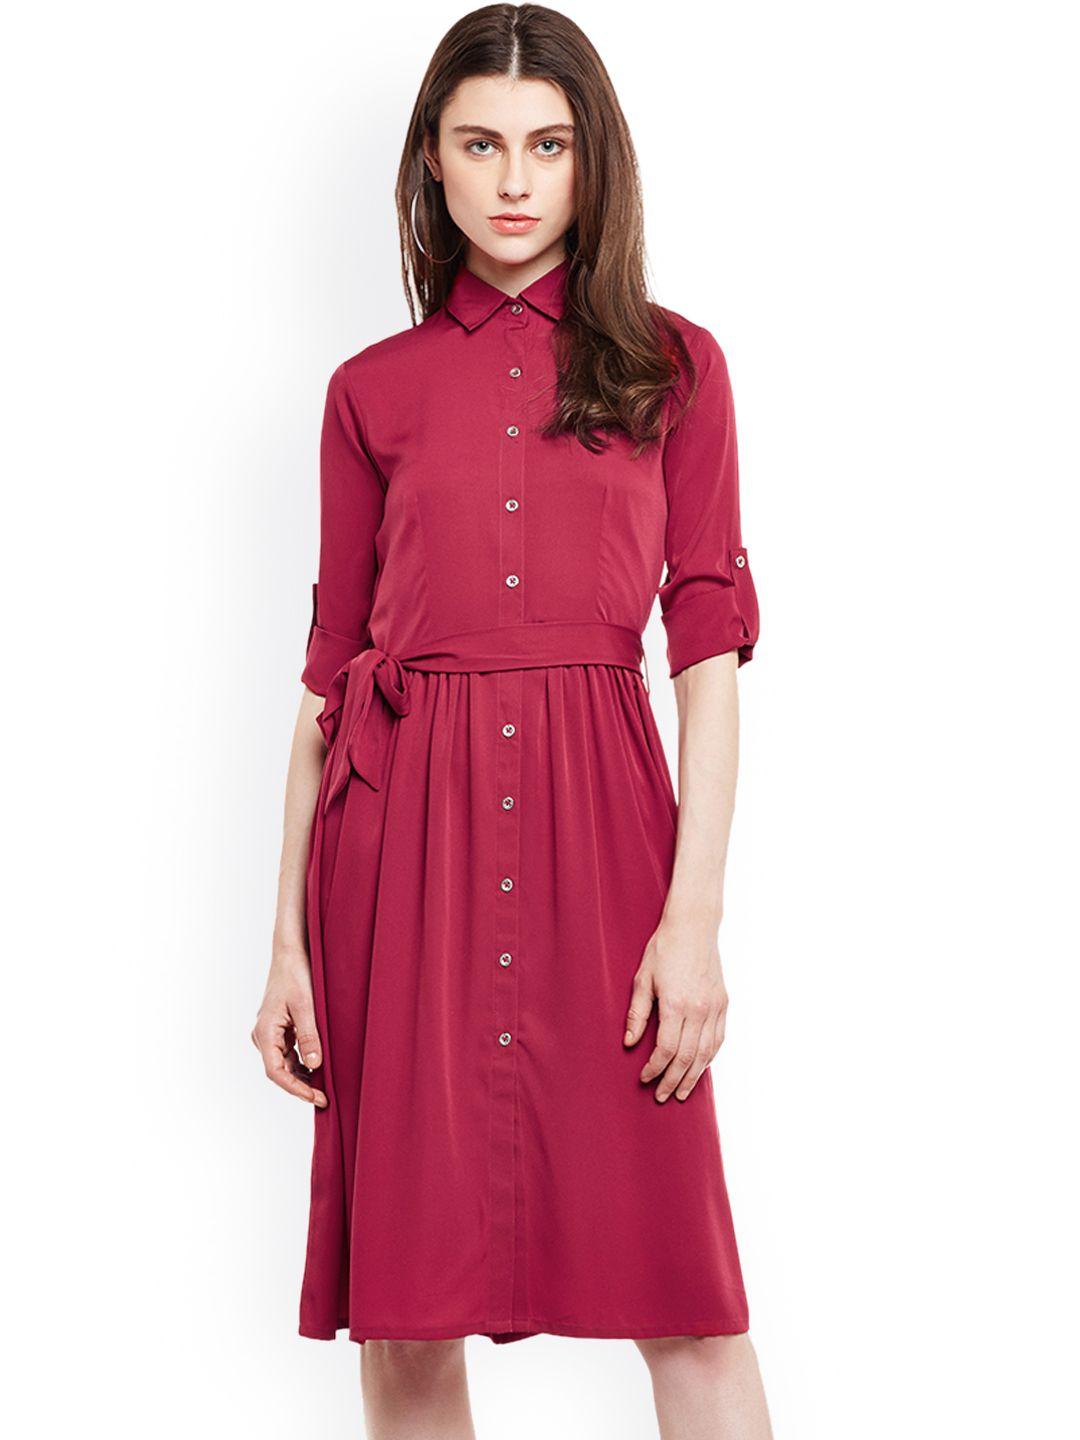 wisstler women maroon solid shirt dress